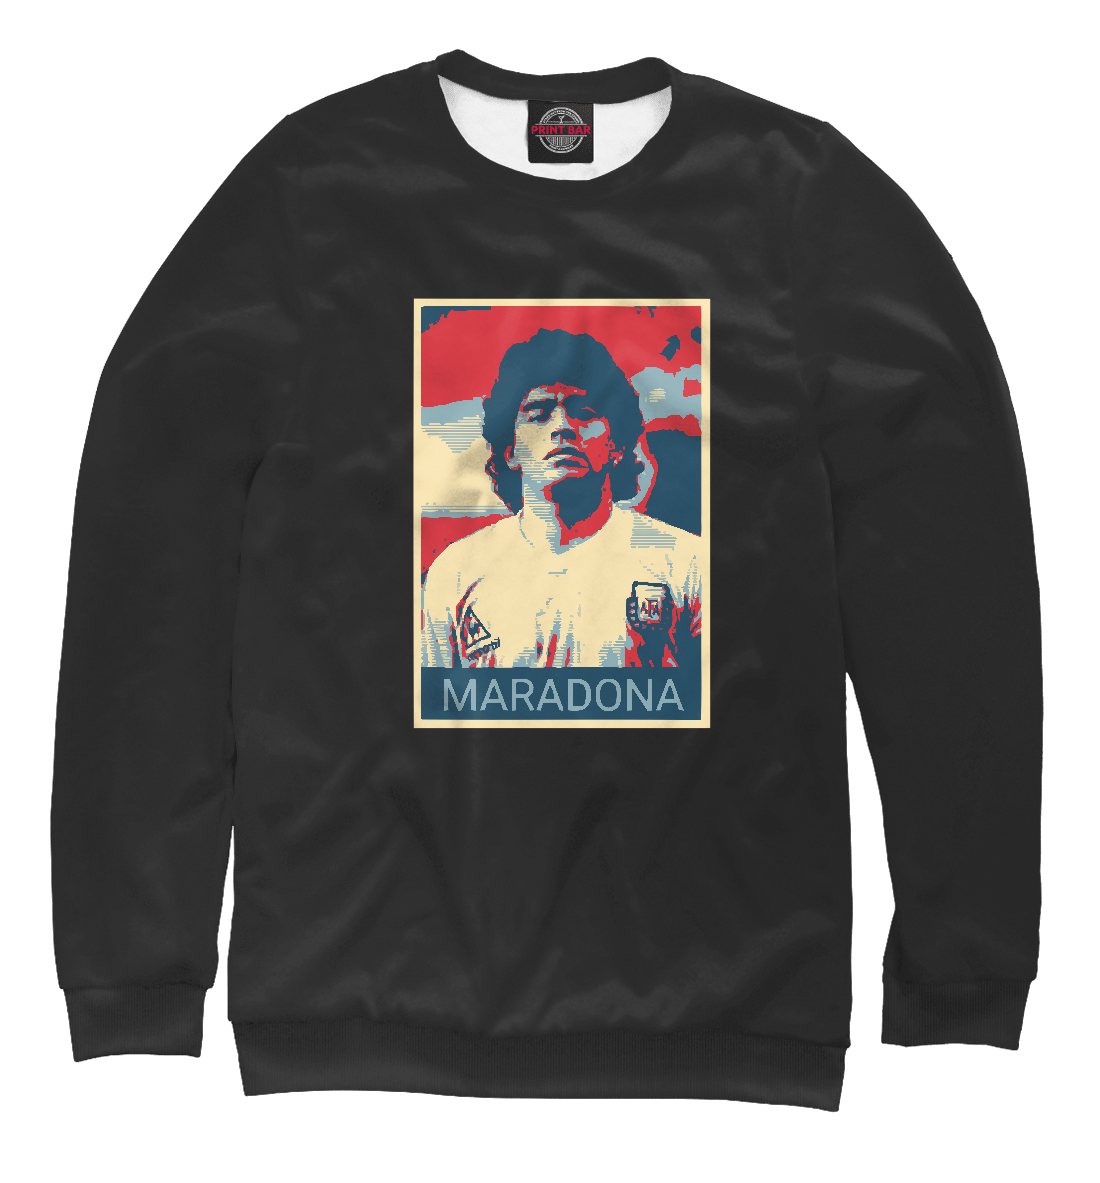 Женский Свитшот Maradona, артикул FLT-836145-swi-1mp